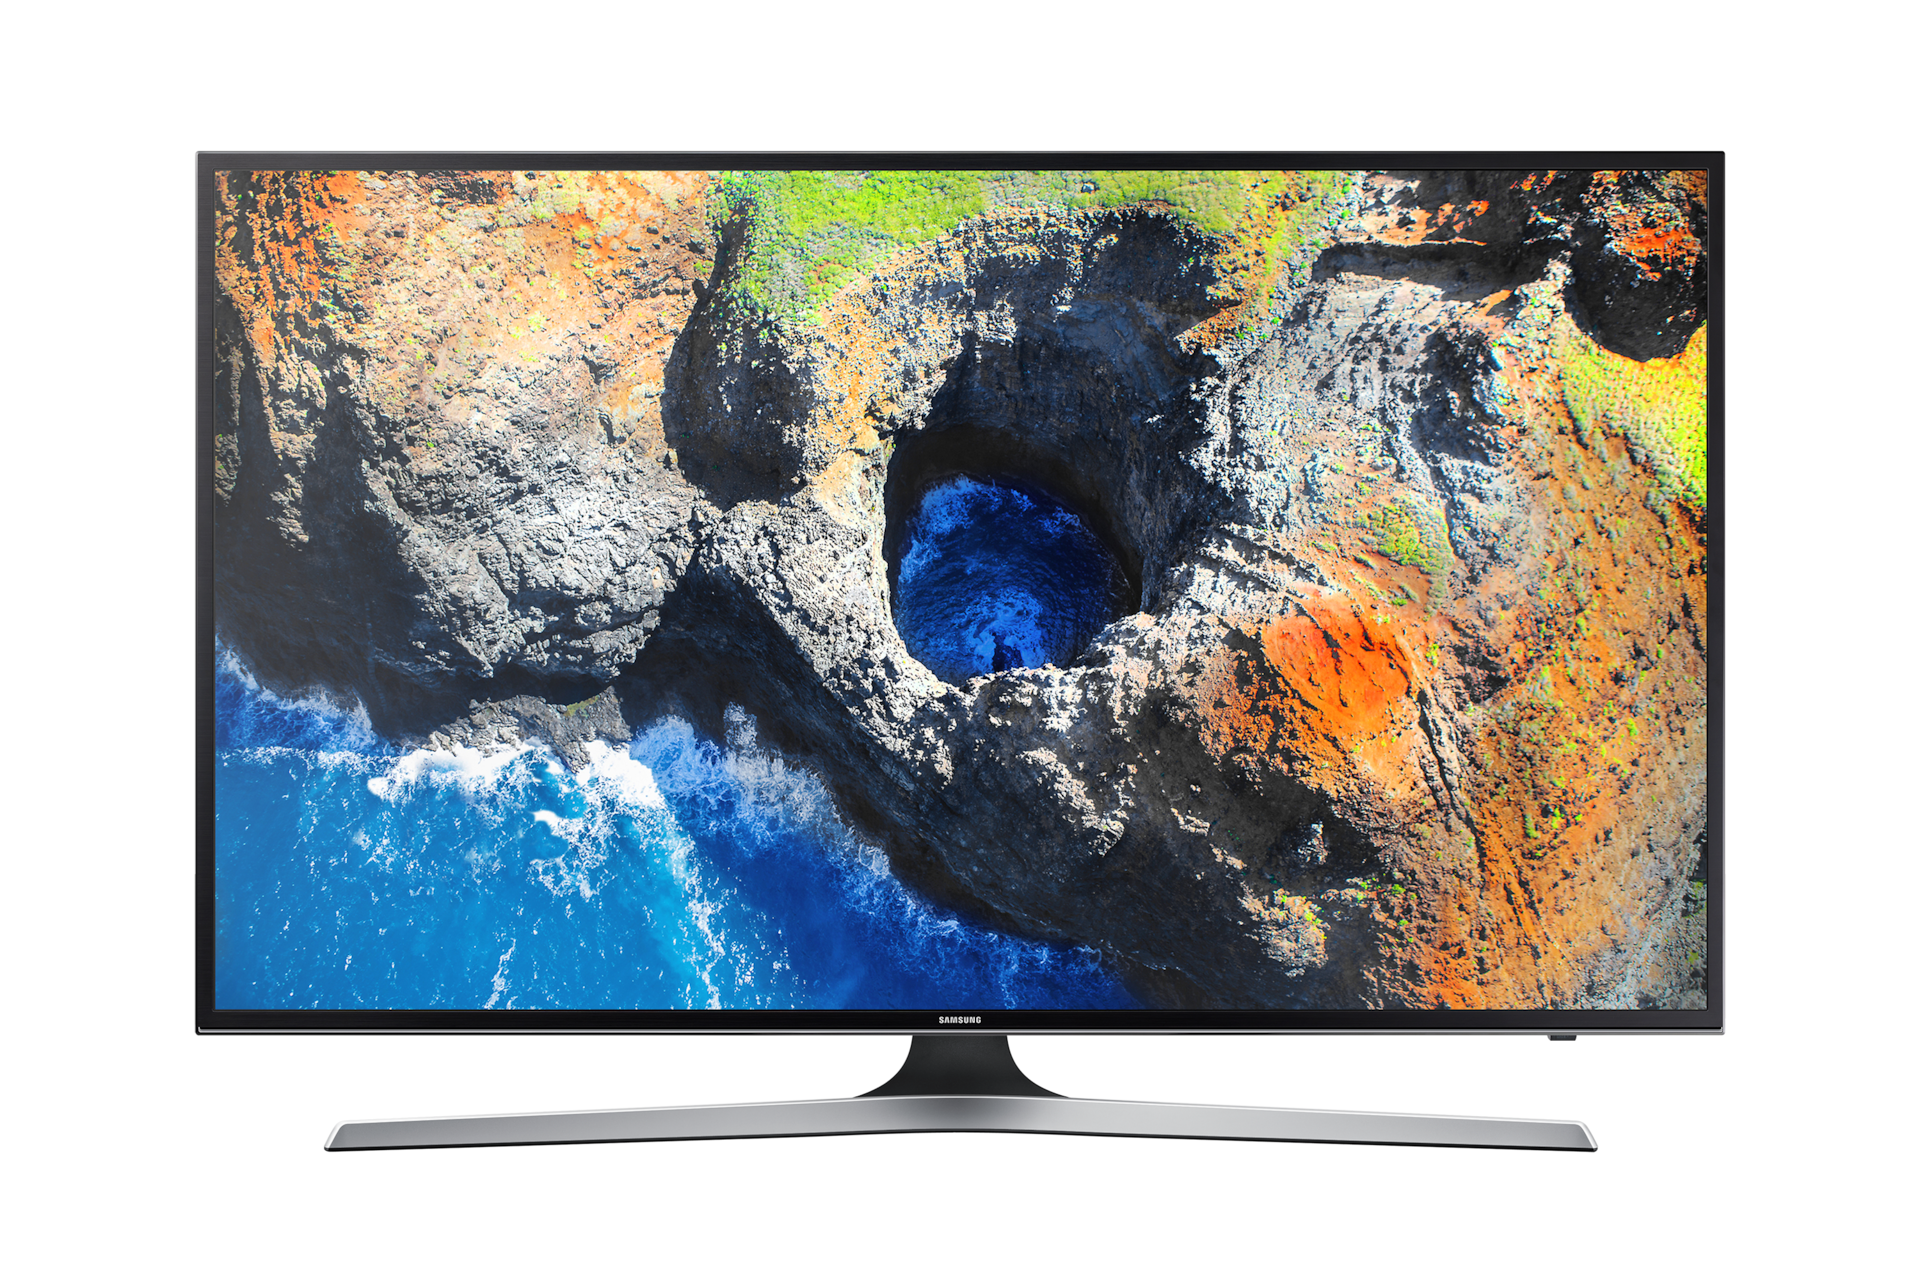 Pantalla Samsung 50 Pulgadas UHD 4K Smart TV a precio de socio